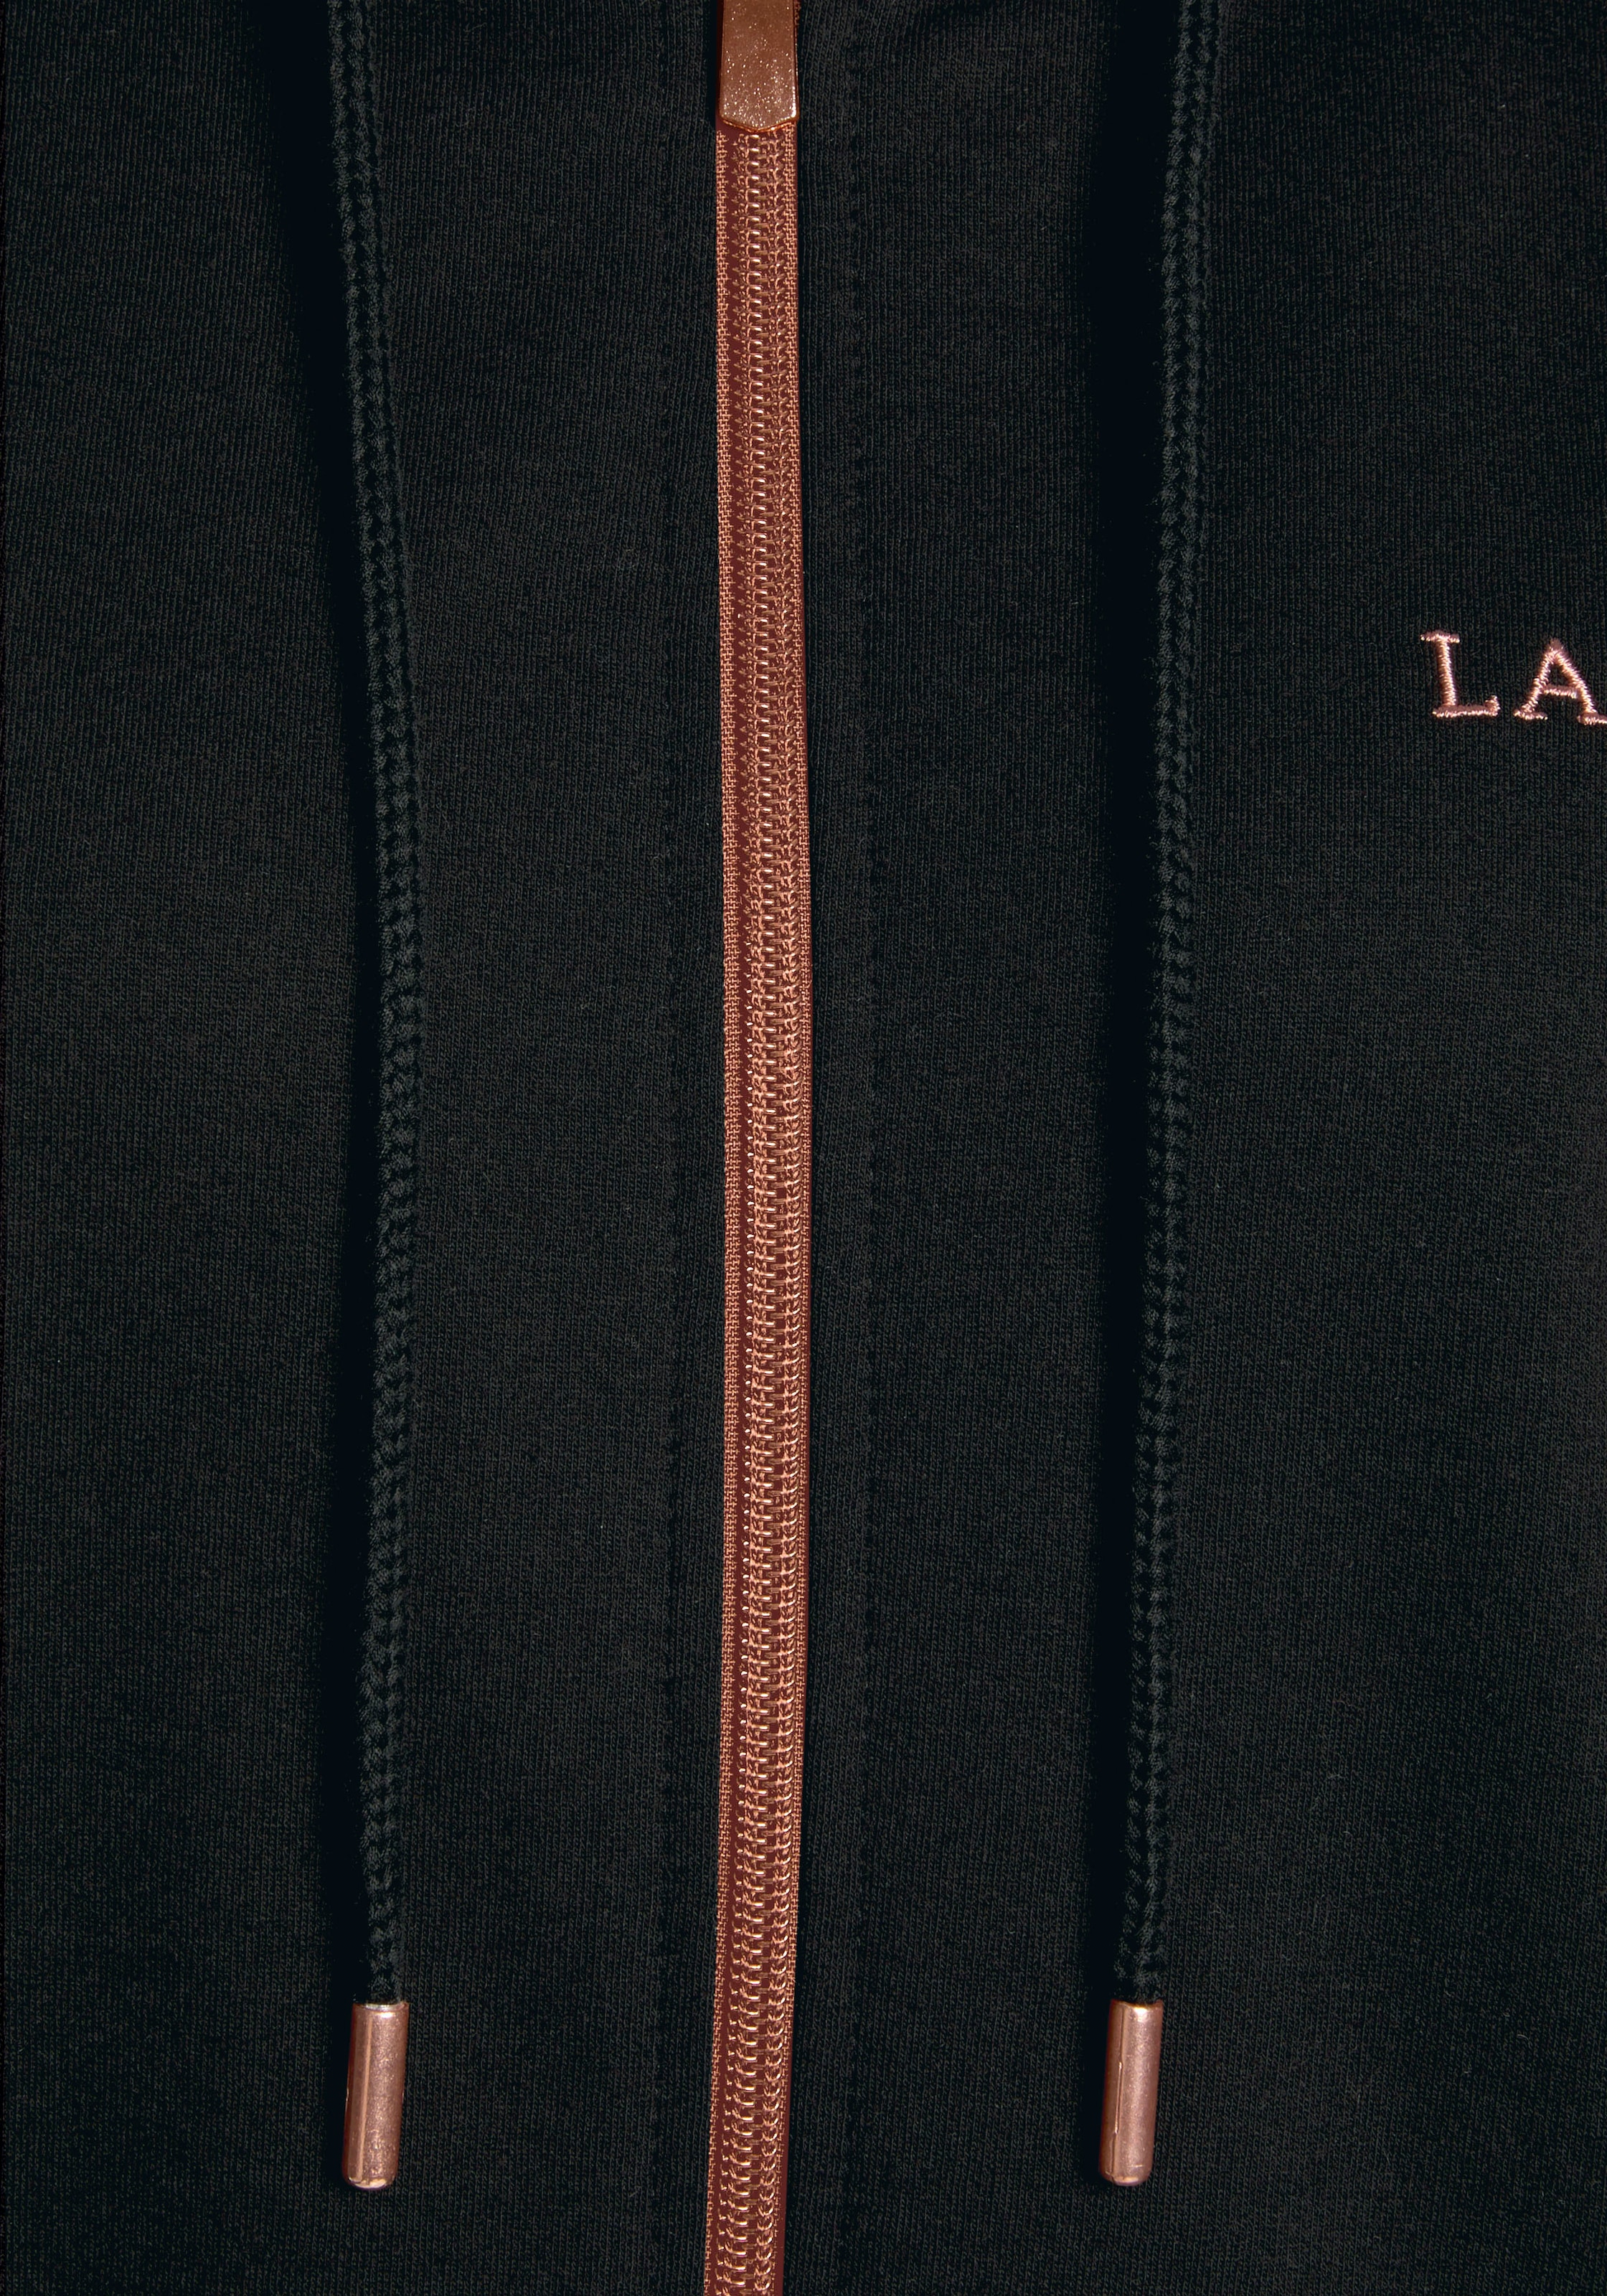 Logostickerei, bei Loungeanzug Kapuzensweatjacke OTTO »Homewear«, LASCANA Reißverschluss und kupferfarbenen mit